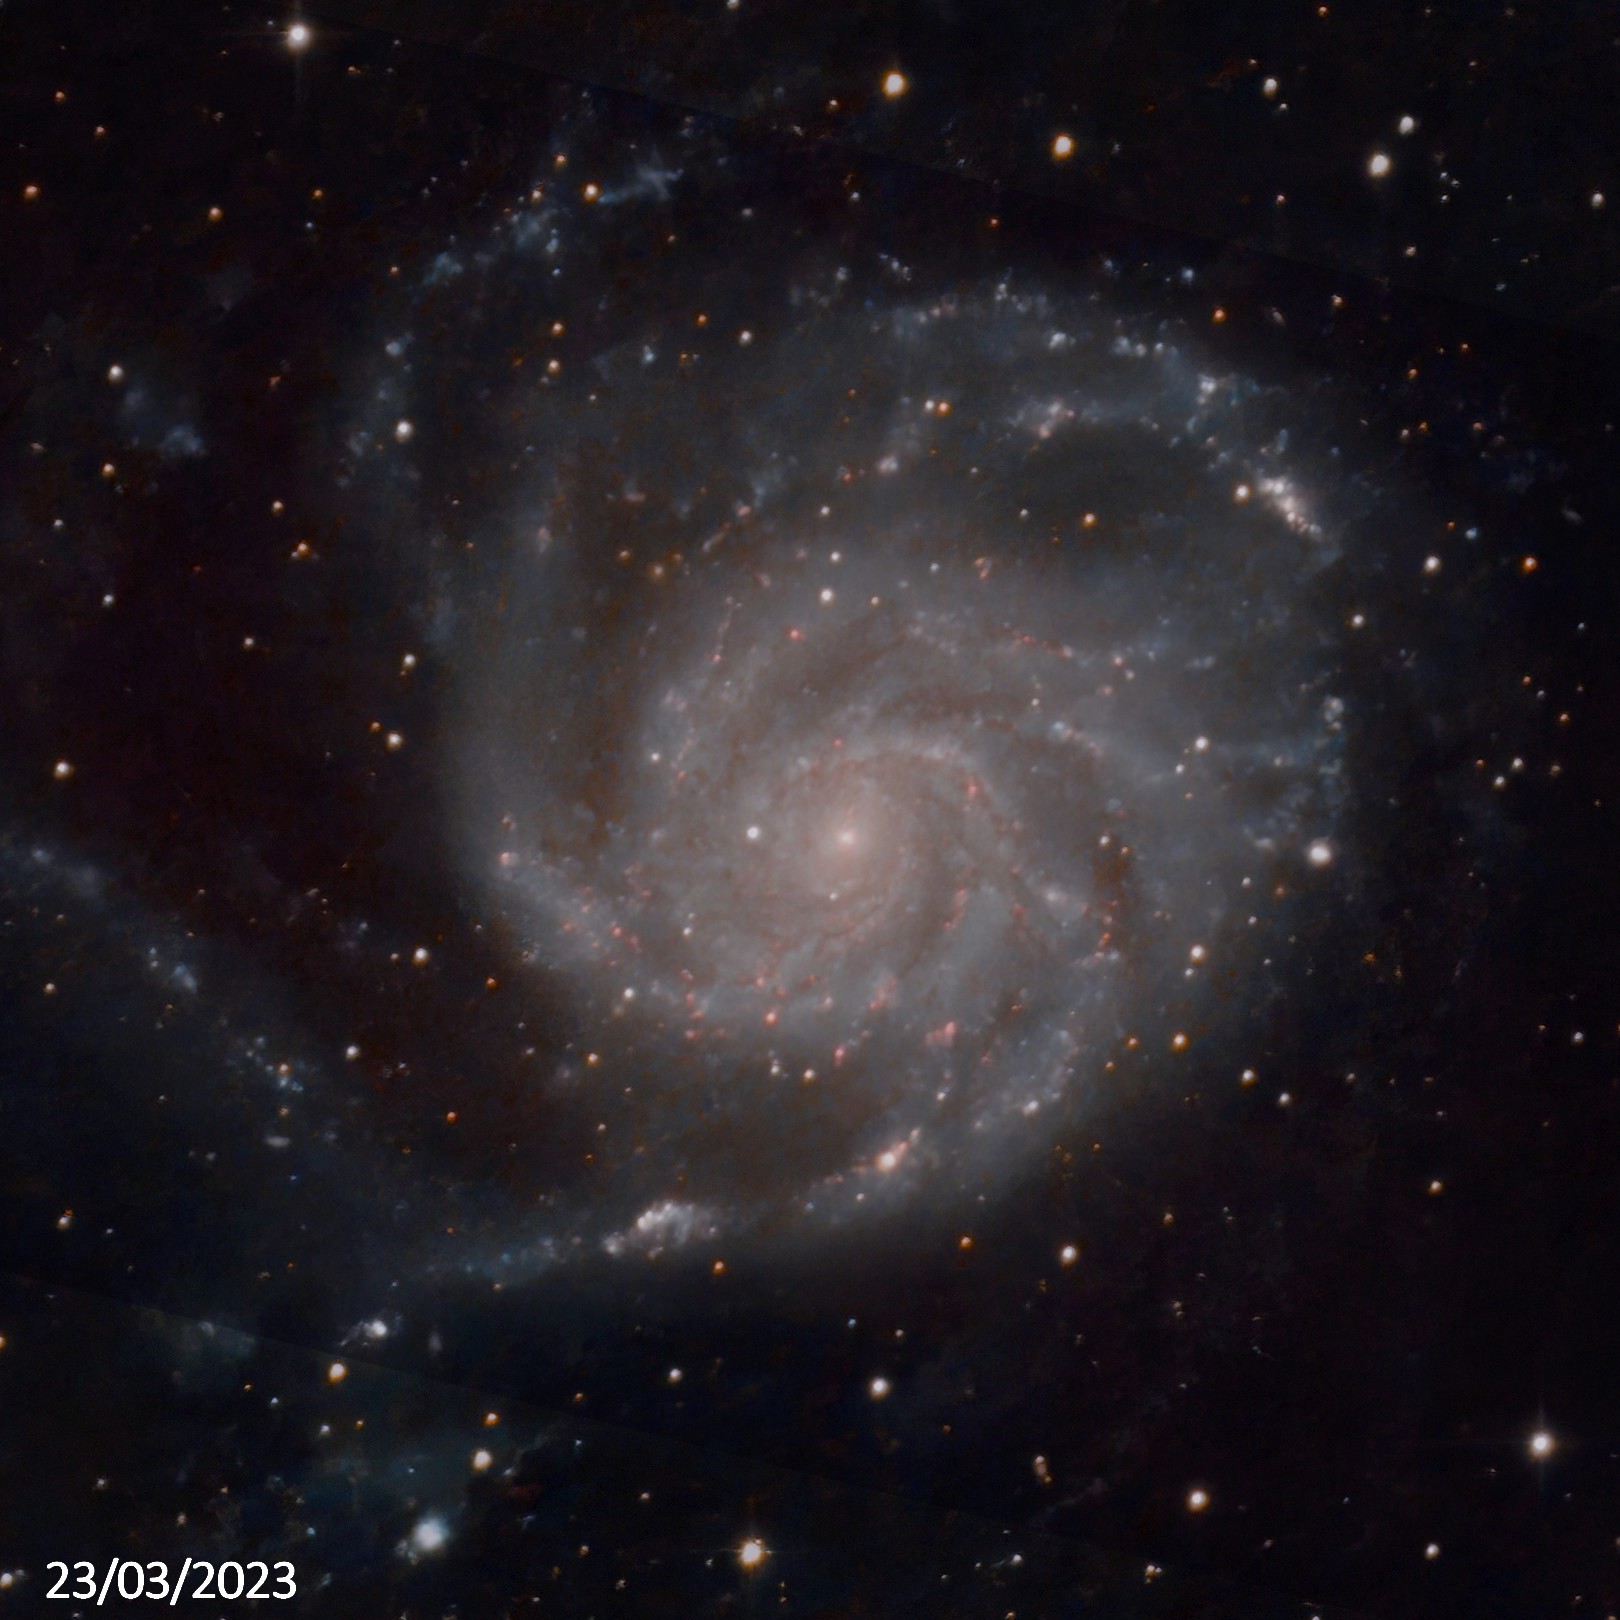 M101 - galaxie du Moulinet